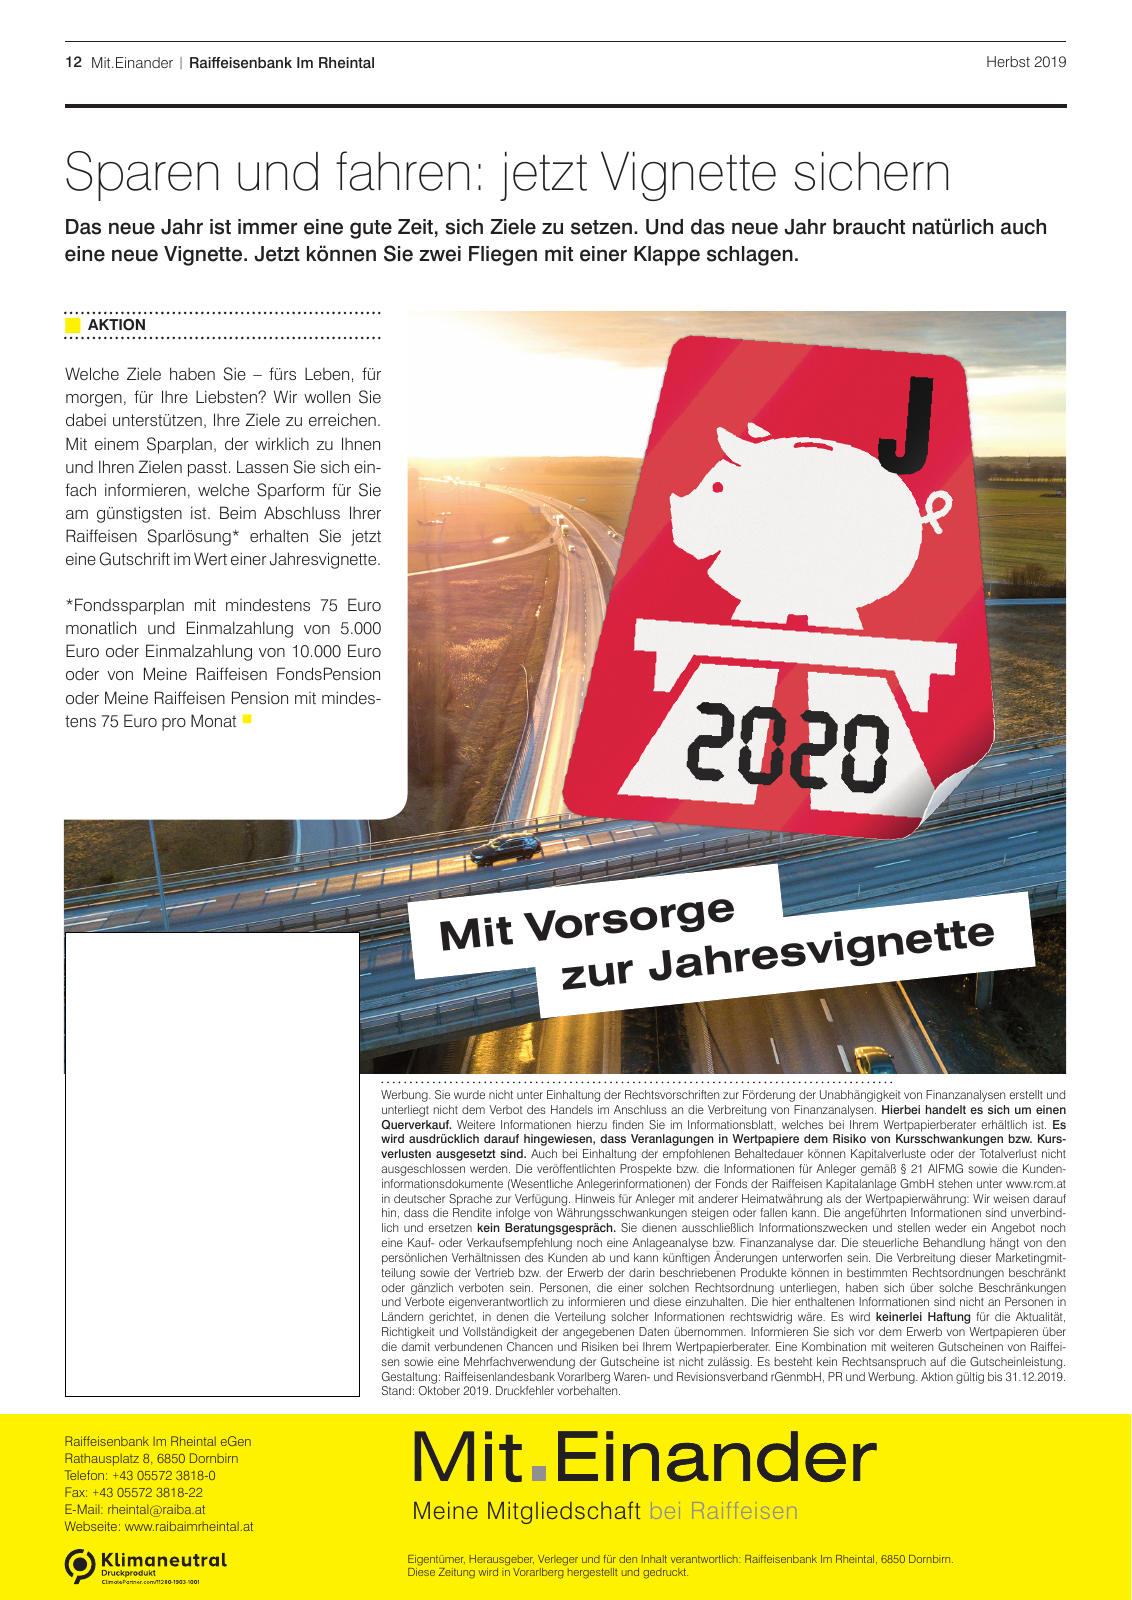 Vorschau Mitgliederzeitung RB im Rheintal Herbst 2019 Seite 12